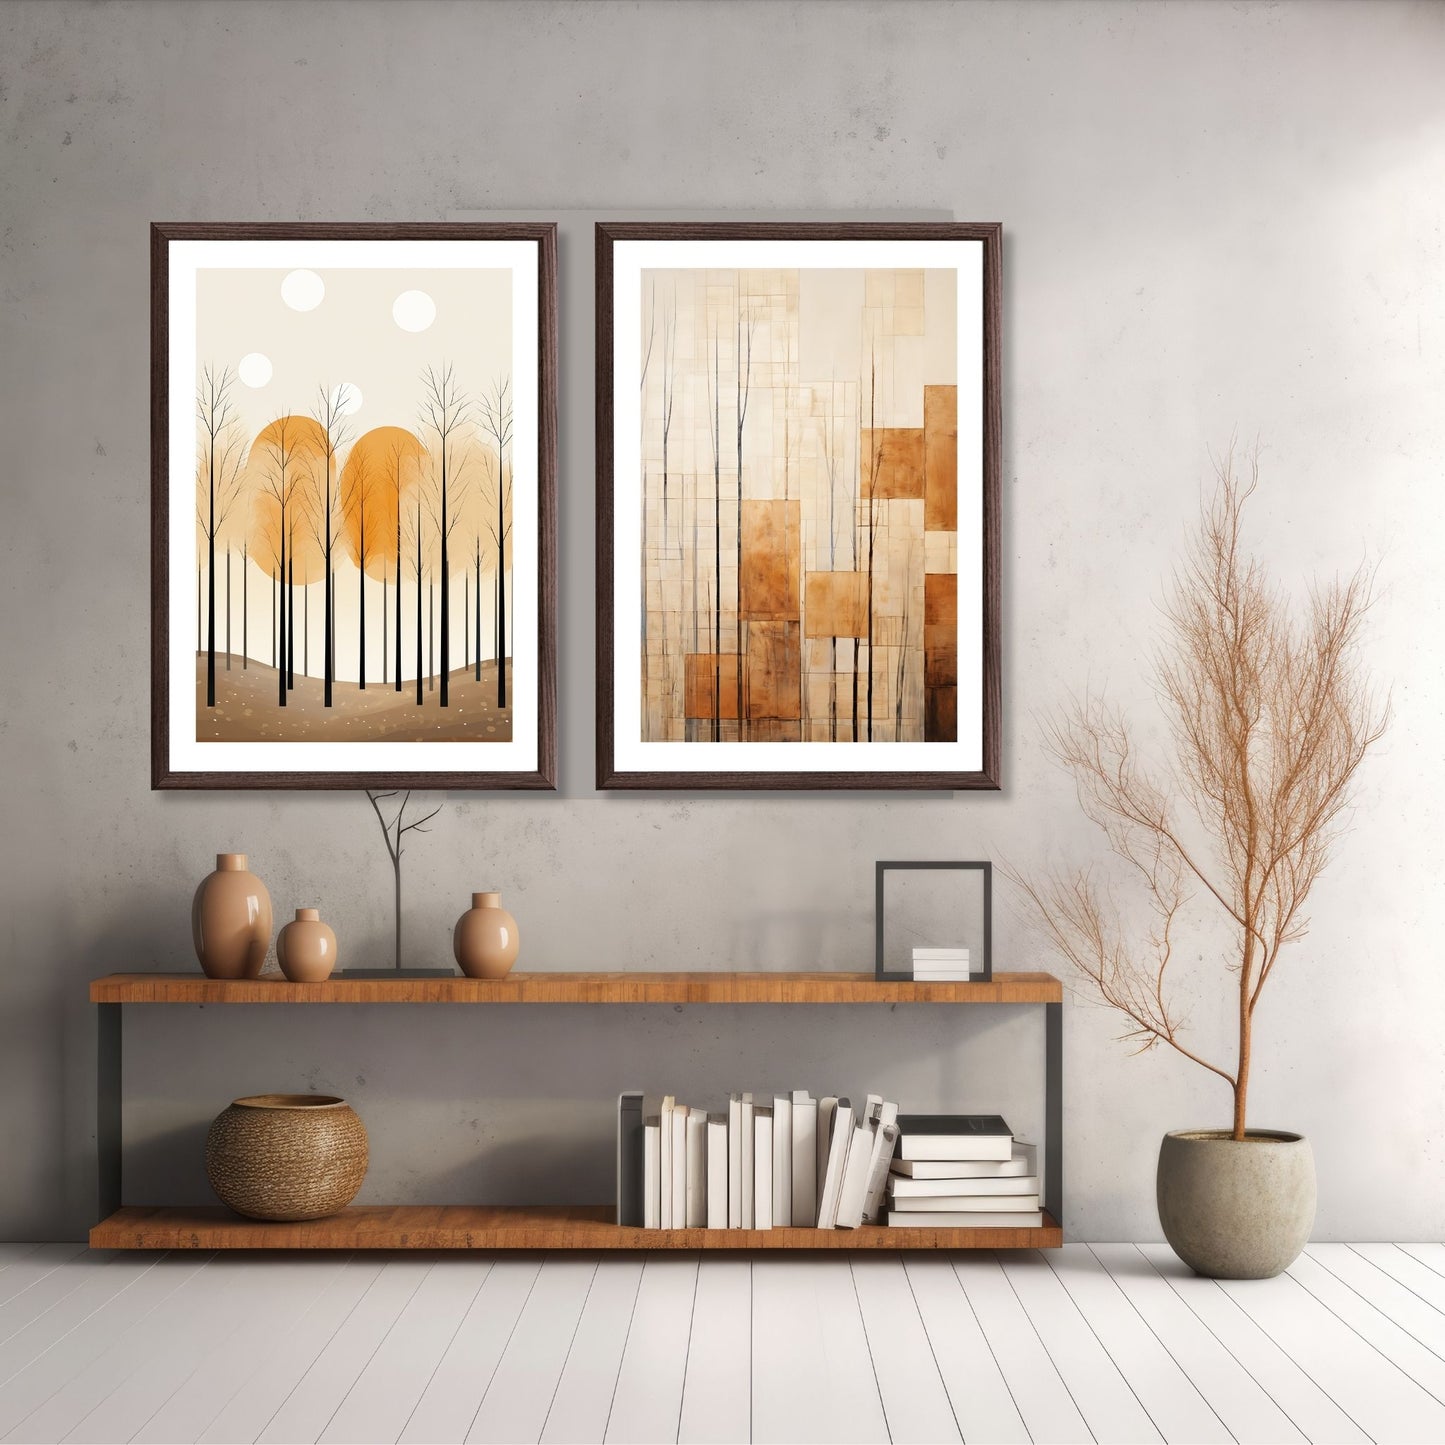 Abstract Forest - grafisk og abstrakt motiv av høye, slanke trær og skog i rust- og beige fargetoner. Illustrasjon av motiv 1 og 6 i brun ramme.